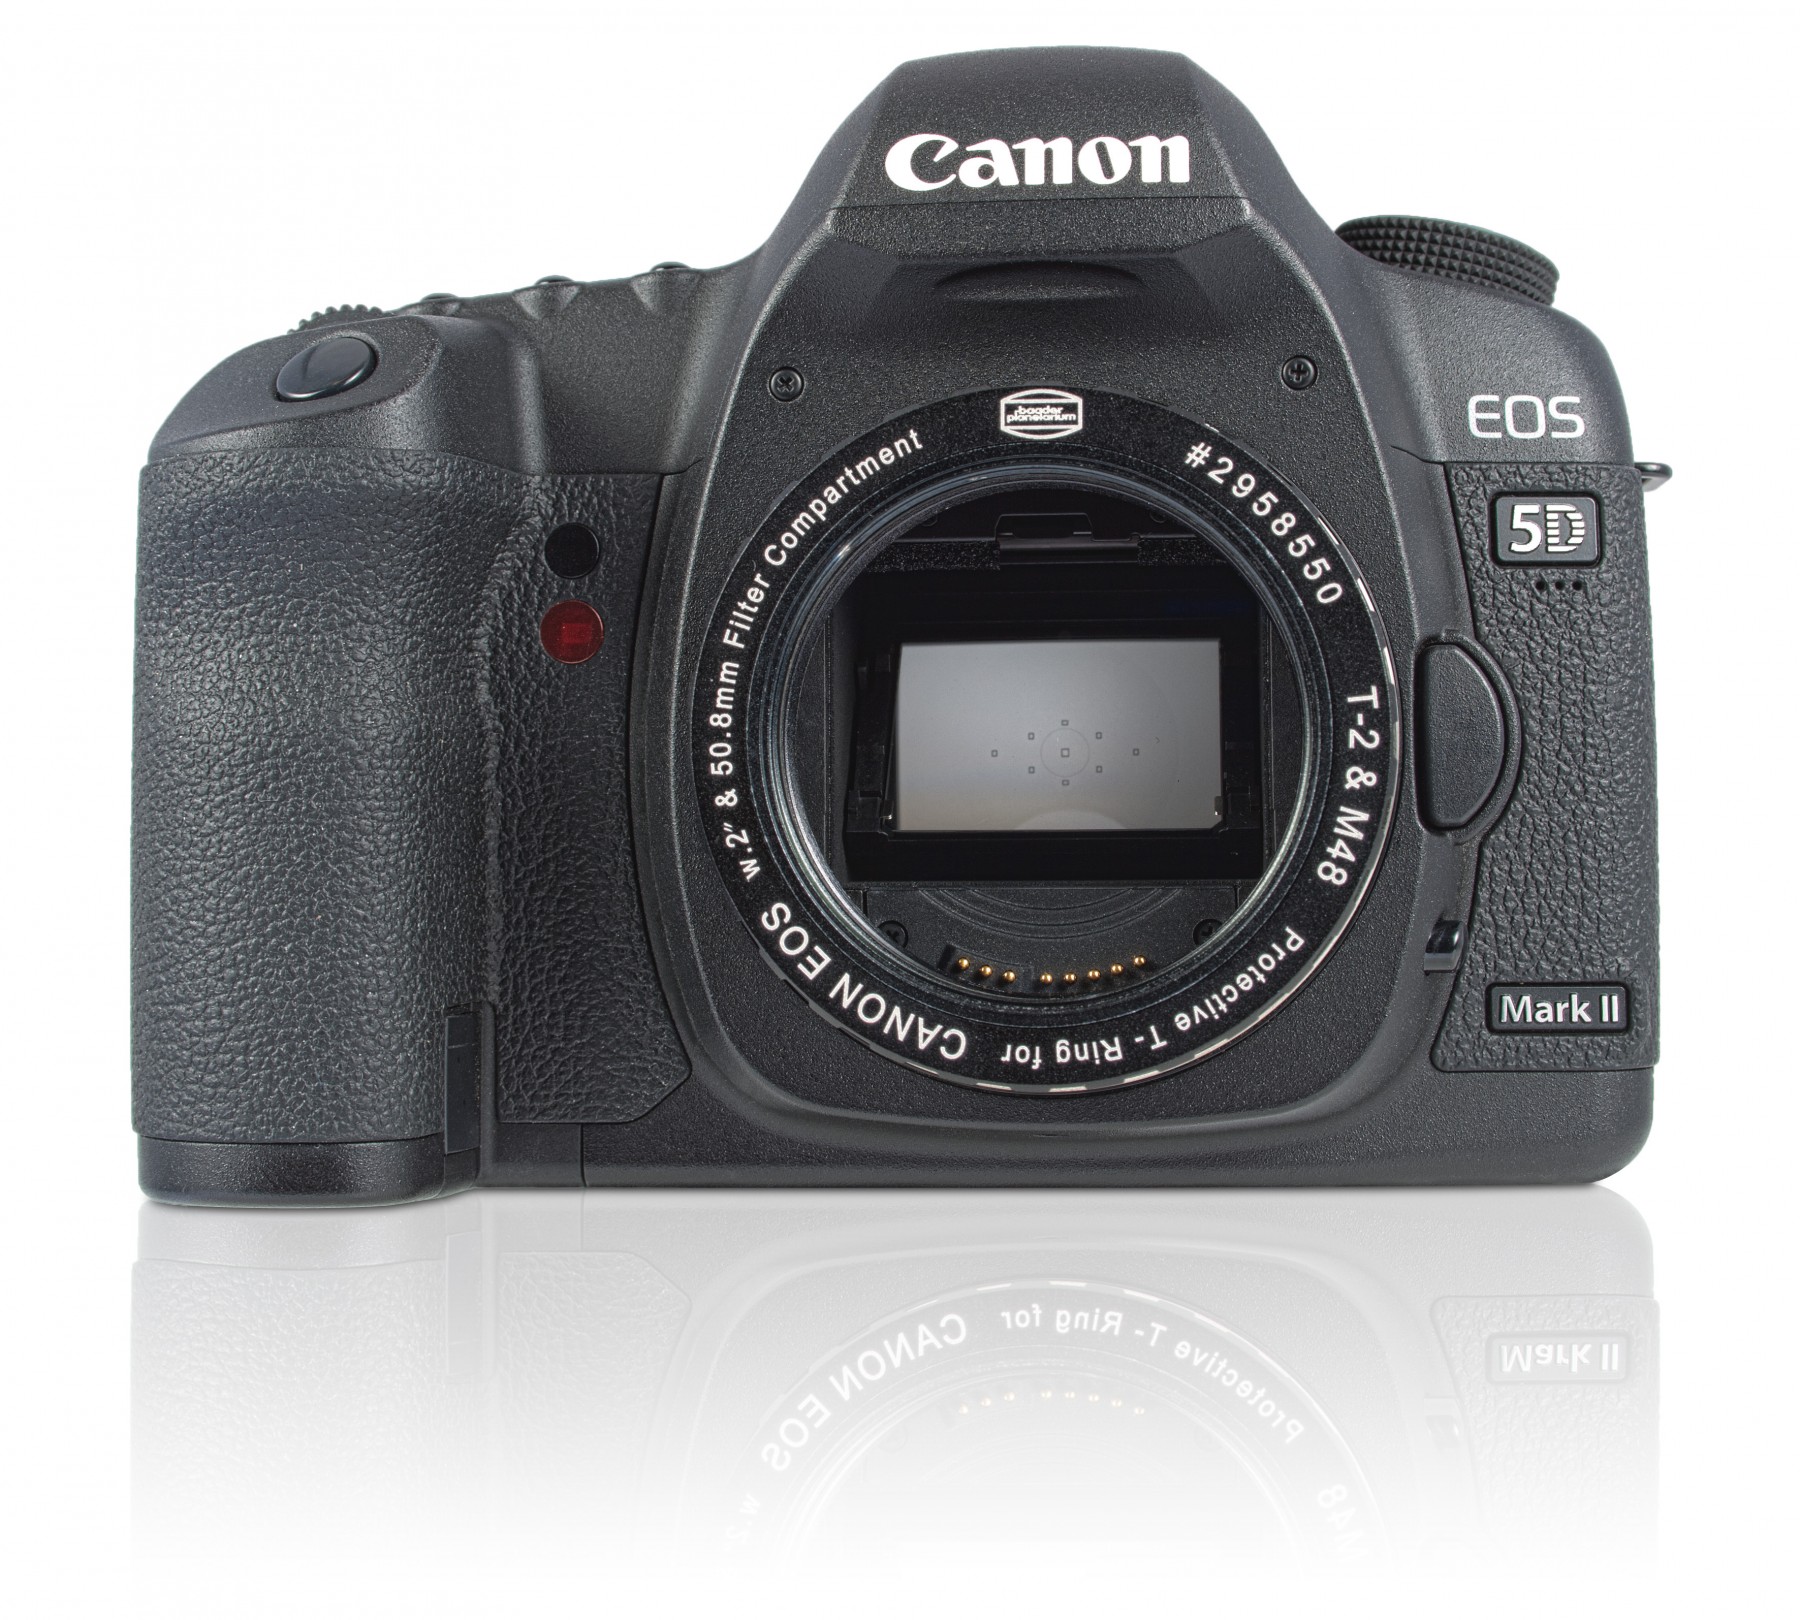 Canon EOS Protective T-Ring in Standardausführung ohne zusätzlichen Filter. Kamera nicht im Lieferumfang enthalten